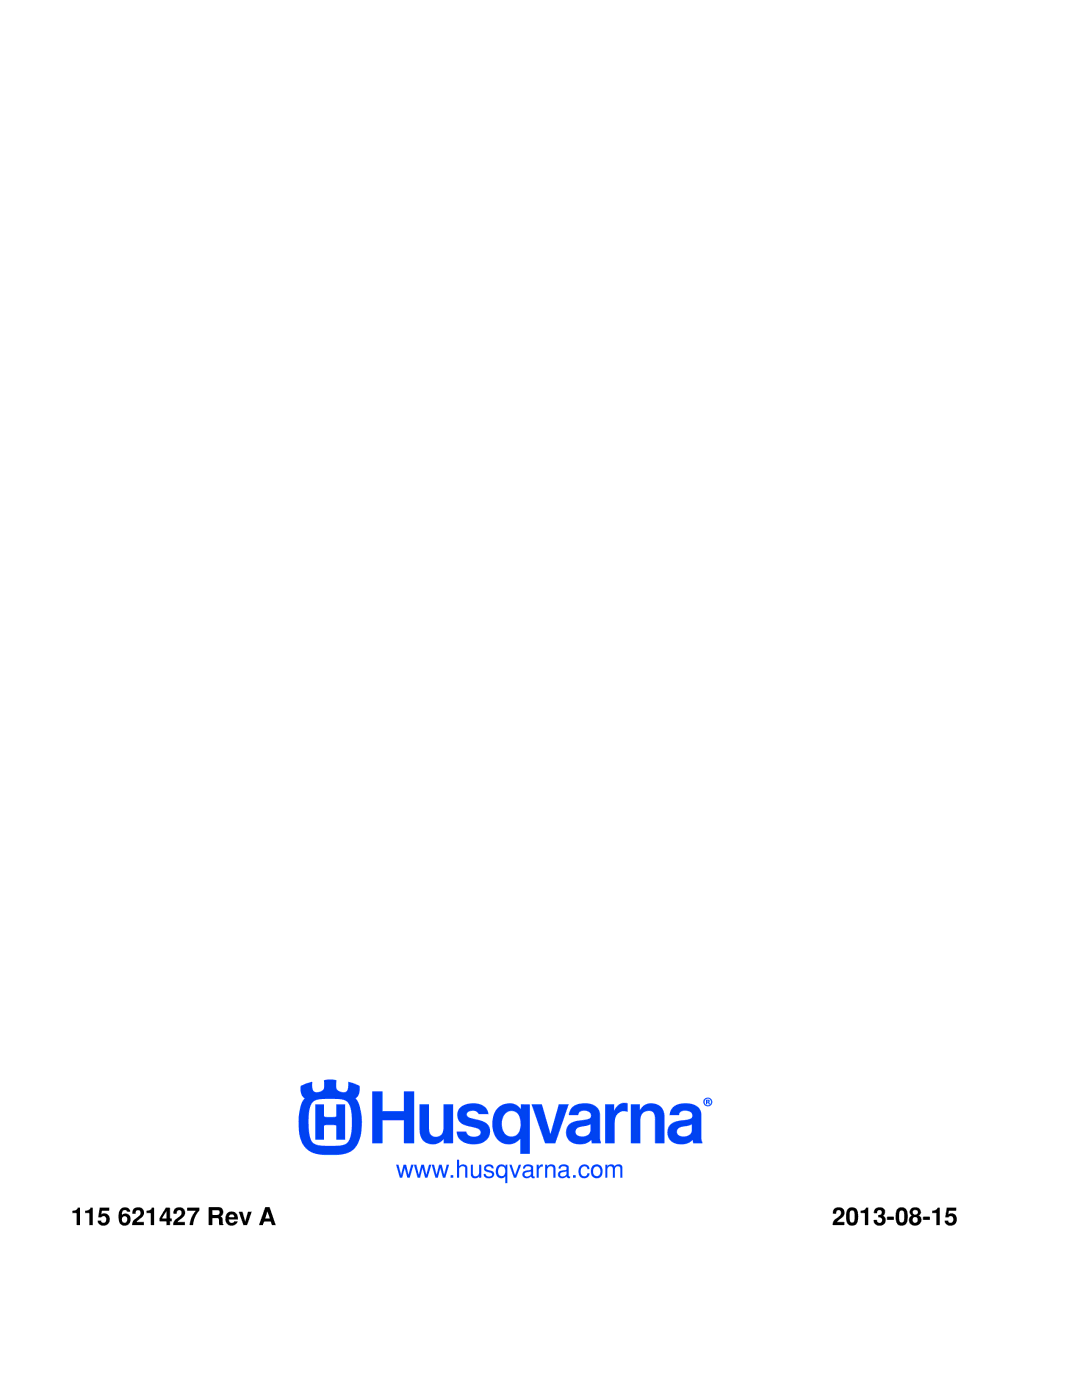 Husqvarna 967009803, RZ46215 warranty 115 621427 Rev a 2013-08-15 